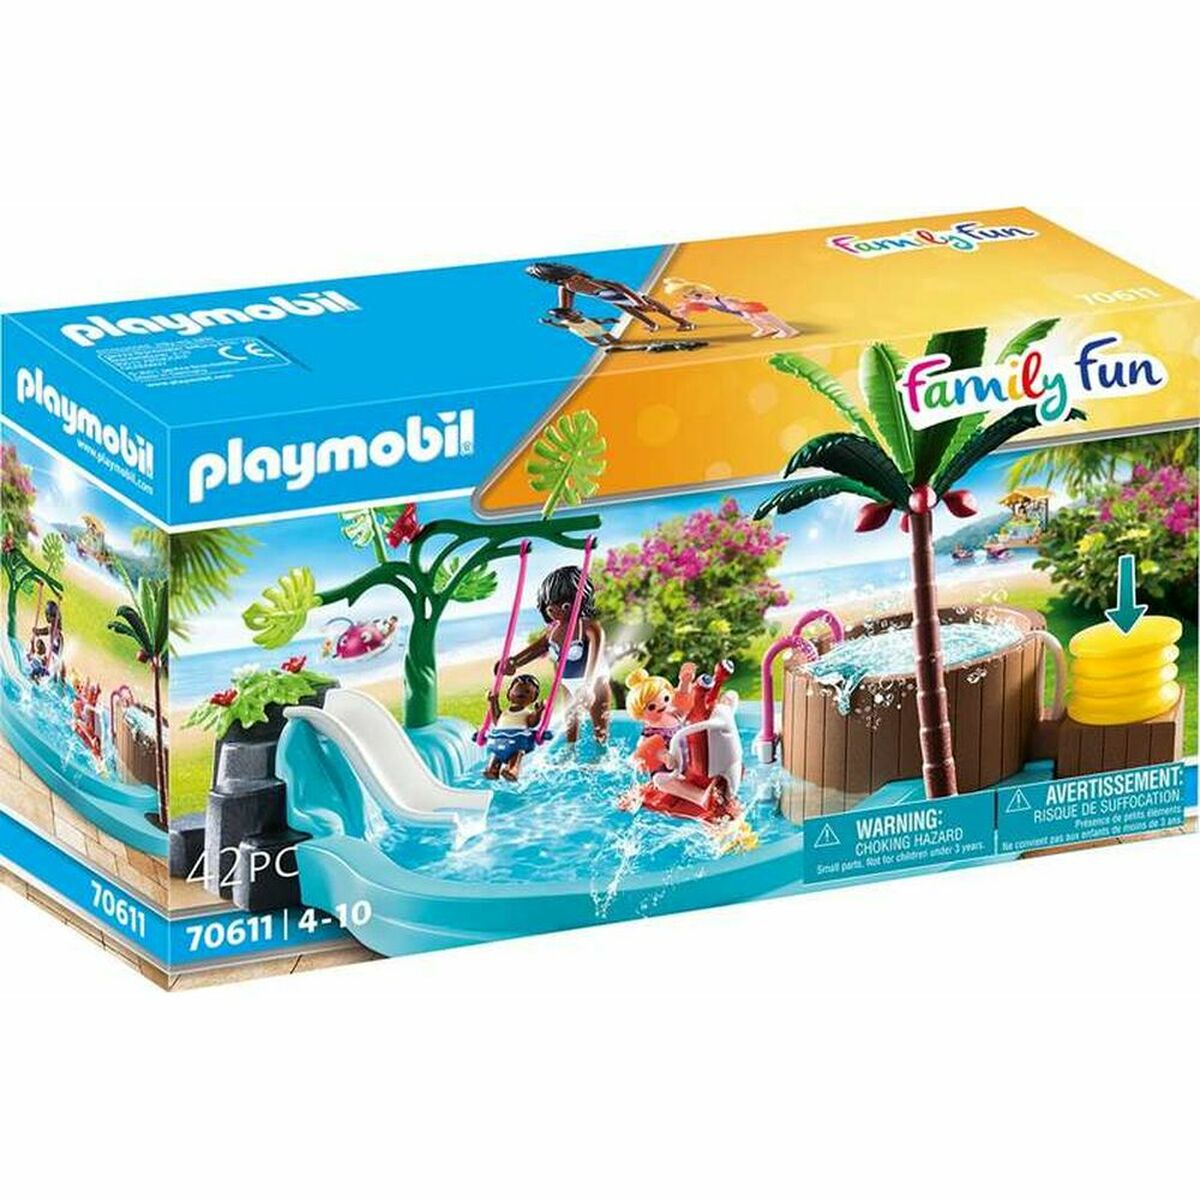 Playset Playmobil 70611 Piscine pour enfants 70611 (42 pcs)